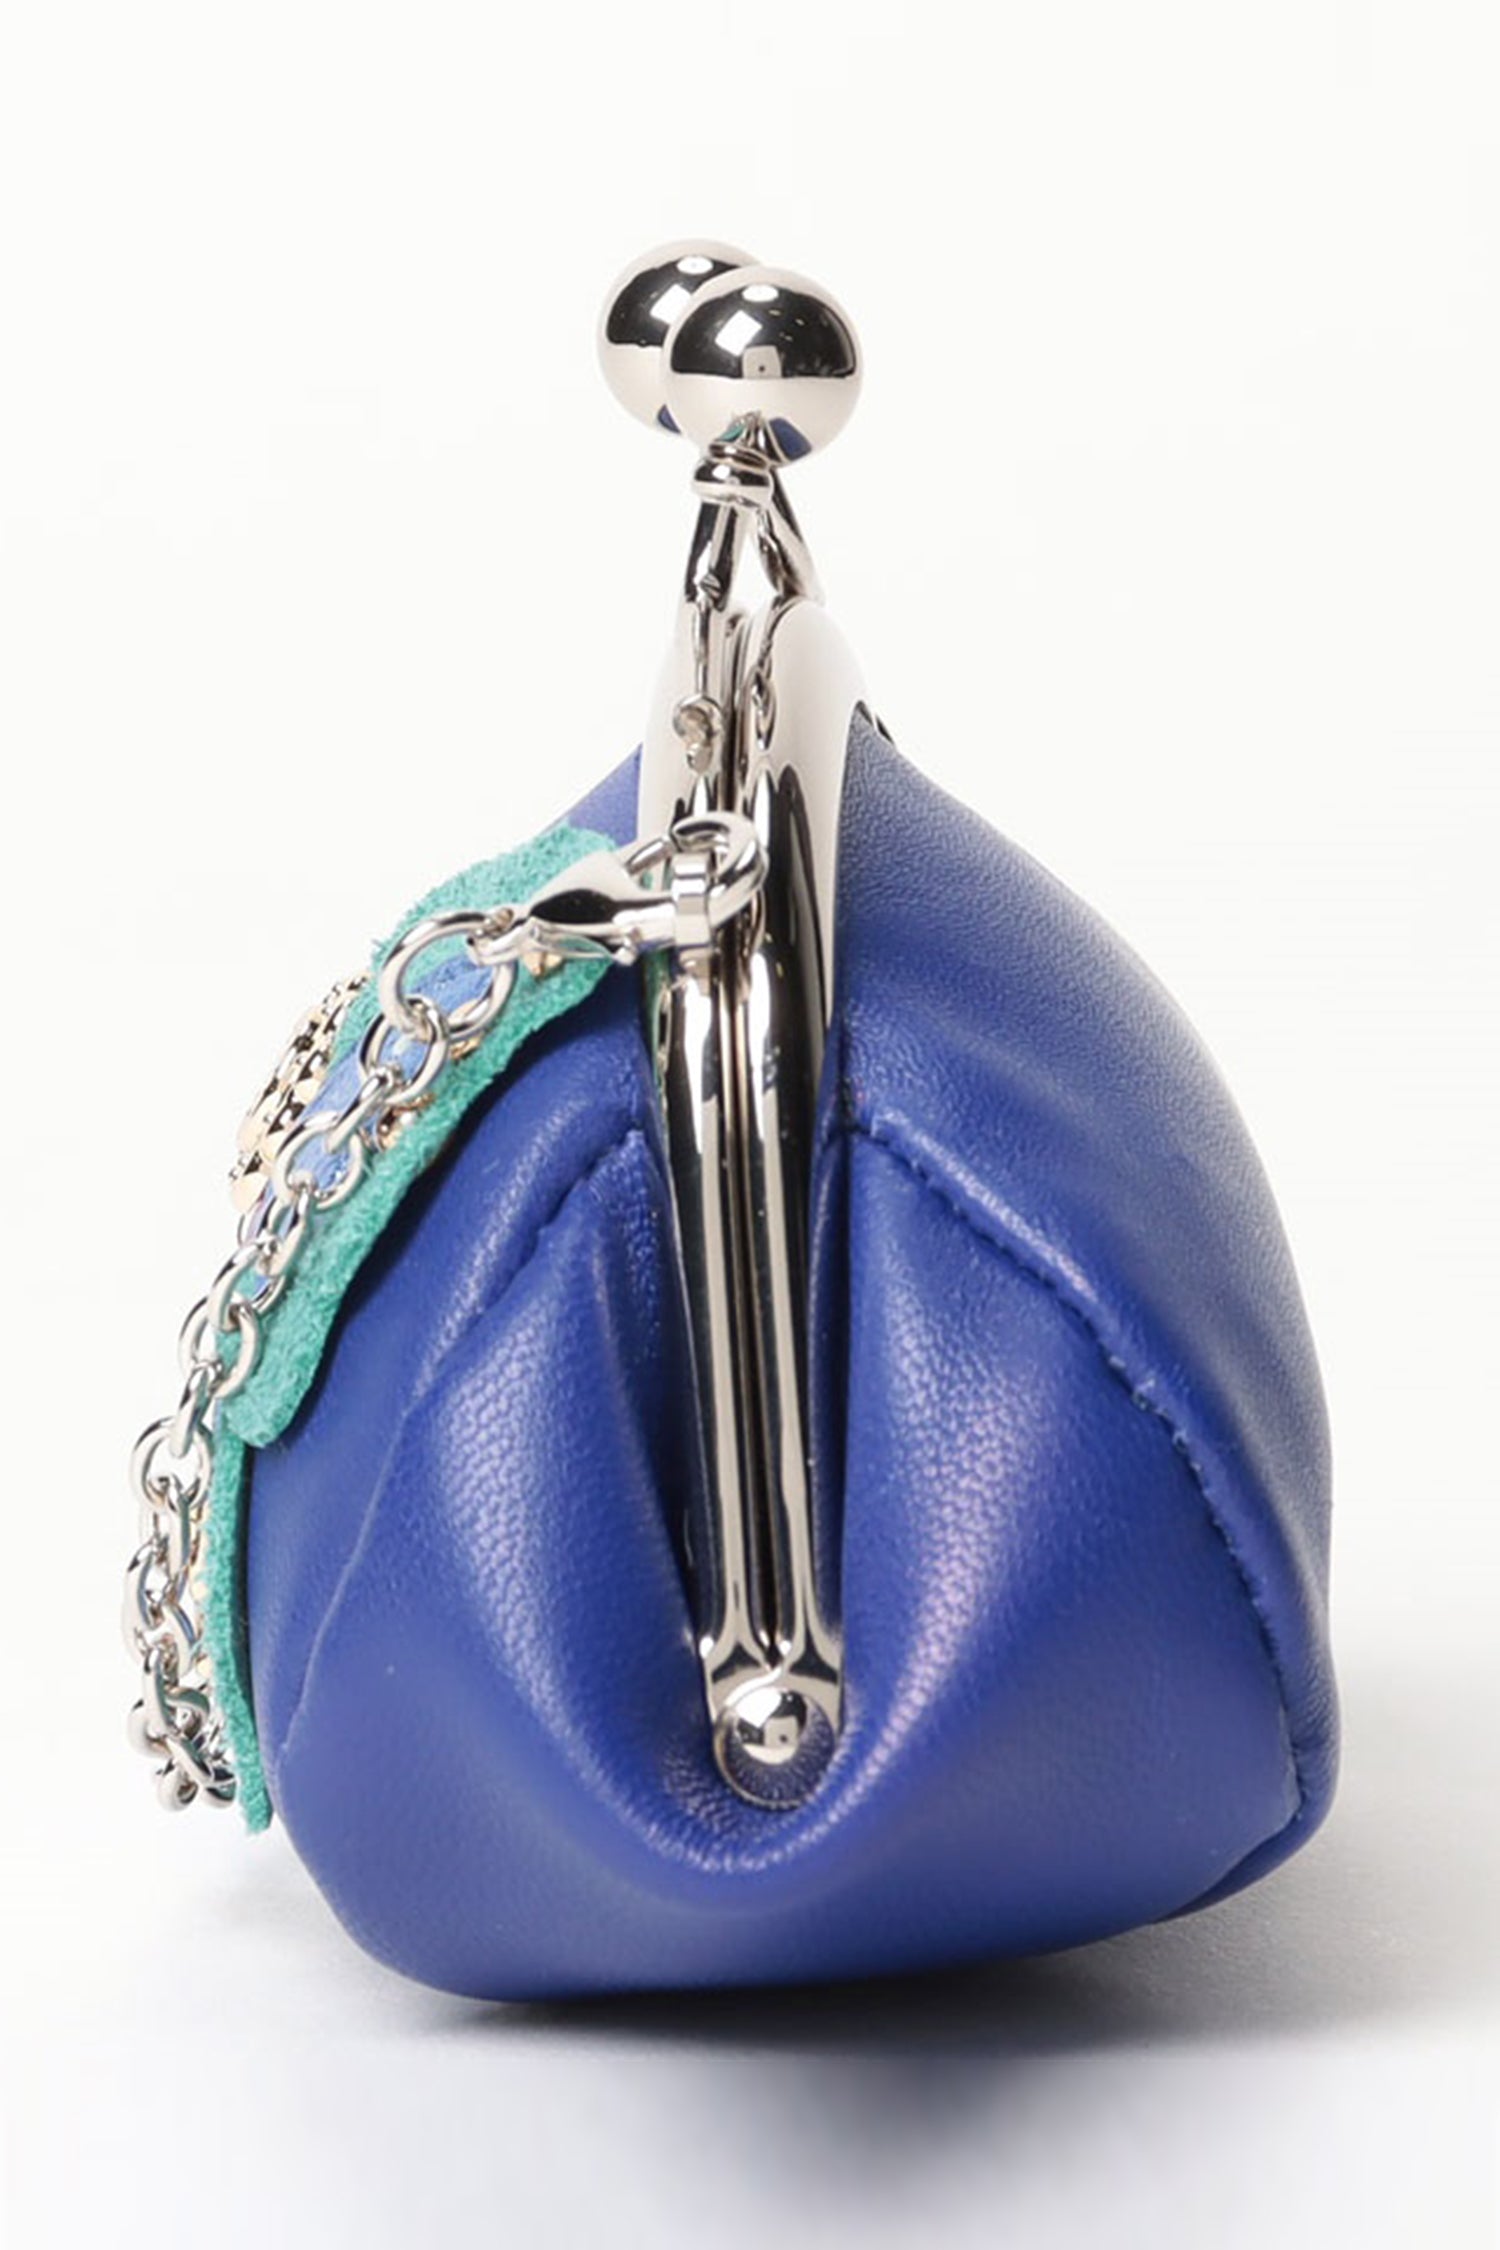 Readystock) Anna Sui tote Bag | Shopee Malaysia